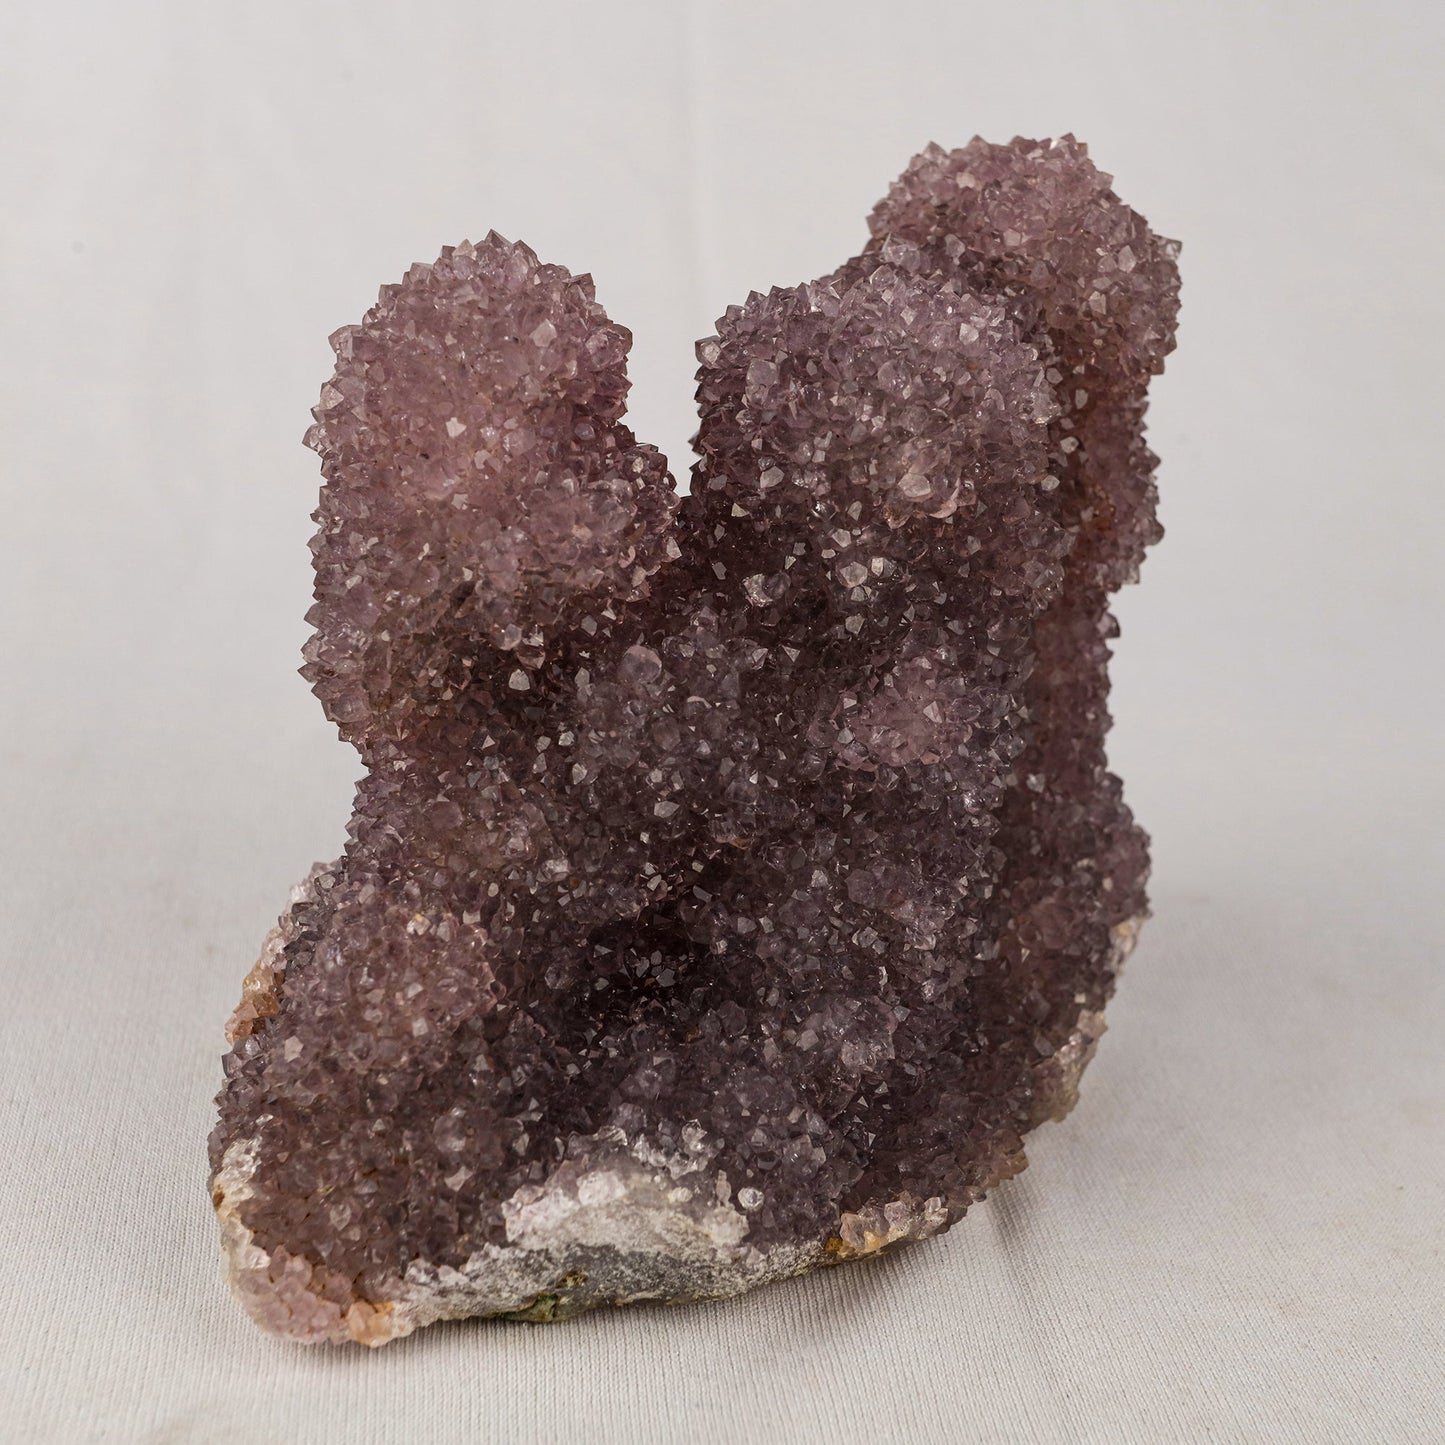 Amethyst Sprakling Crystals Natural Mineral Specimen # B 5519 Amethyst Superb Minerals 